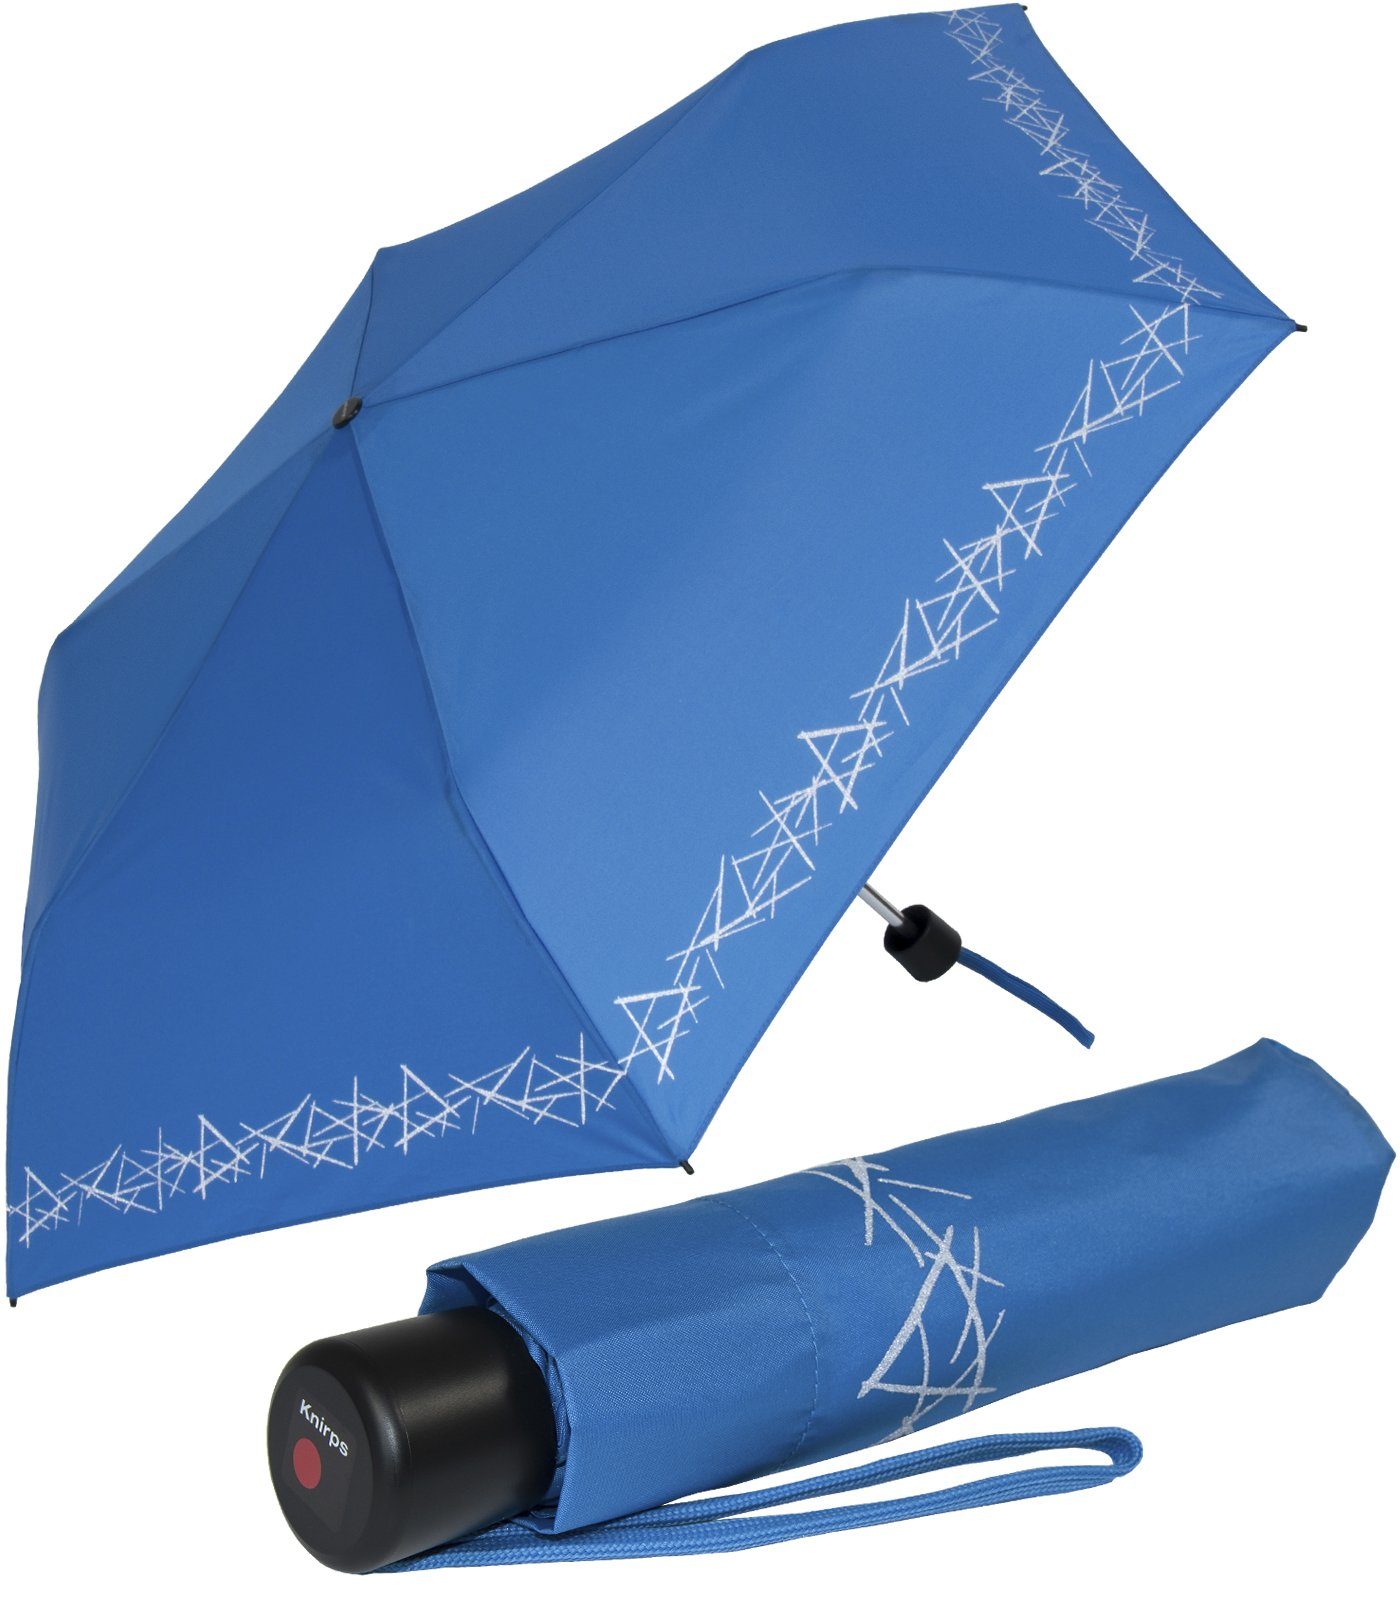 Knirps® Taschenregenschirm Kinderschirm 4Kids reflective mit Reflexborte, Sicherheit auf dem Schulweg, leicht, uni, blue blau